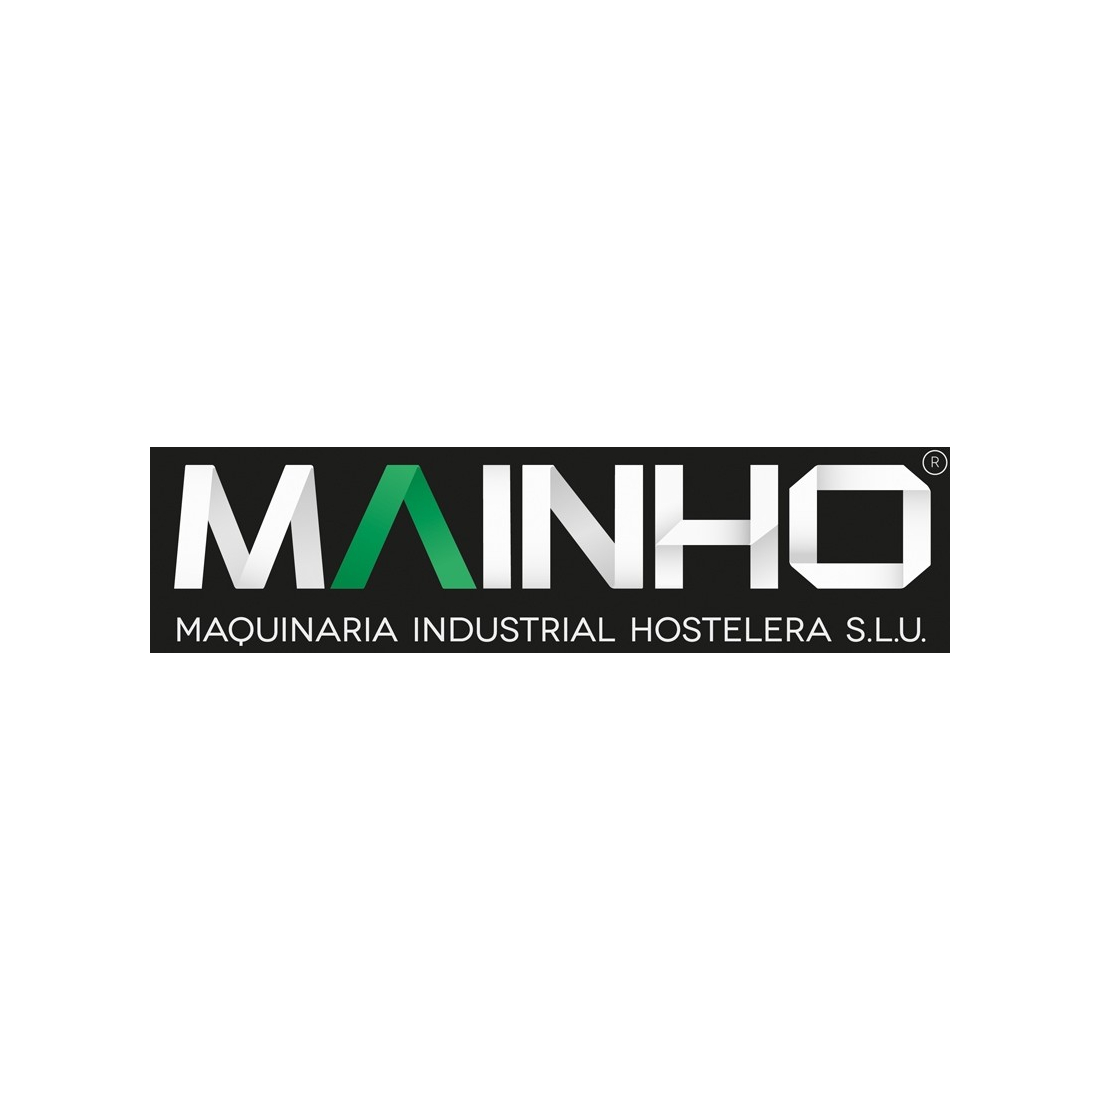 Bouton de Commande chromé MAINHO - Pièces détachées MAINHO - MAINH